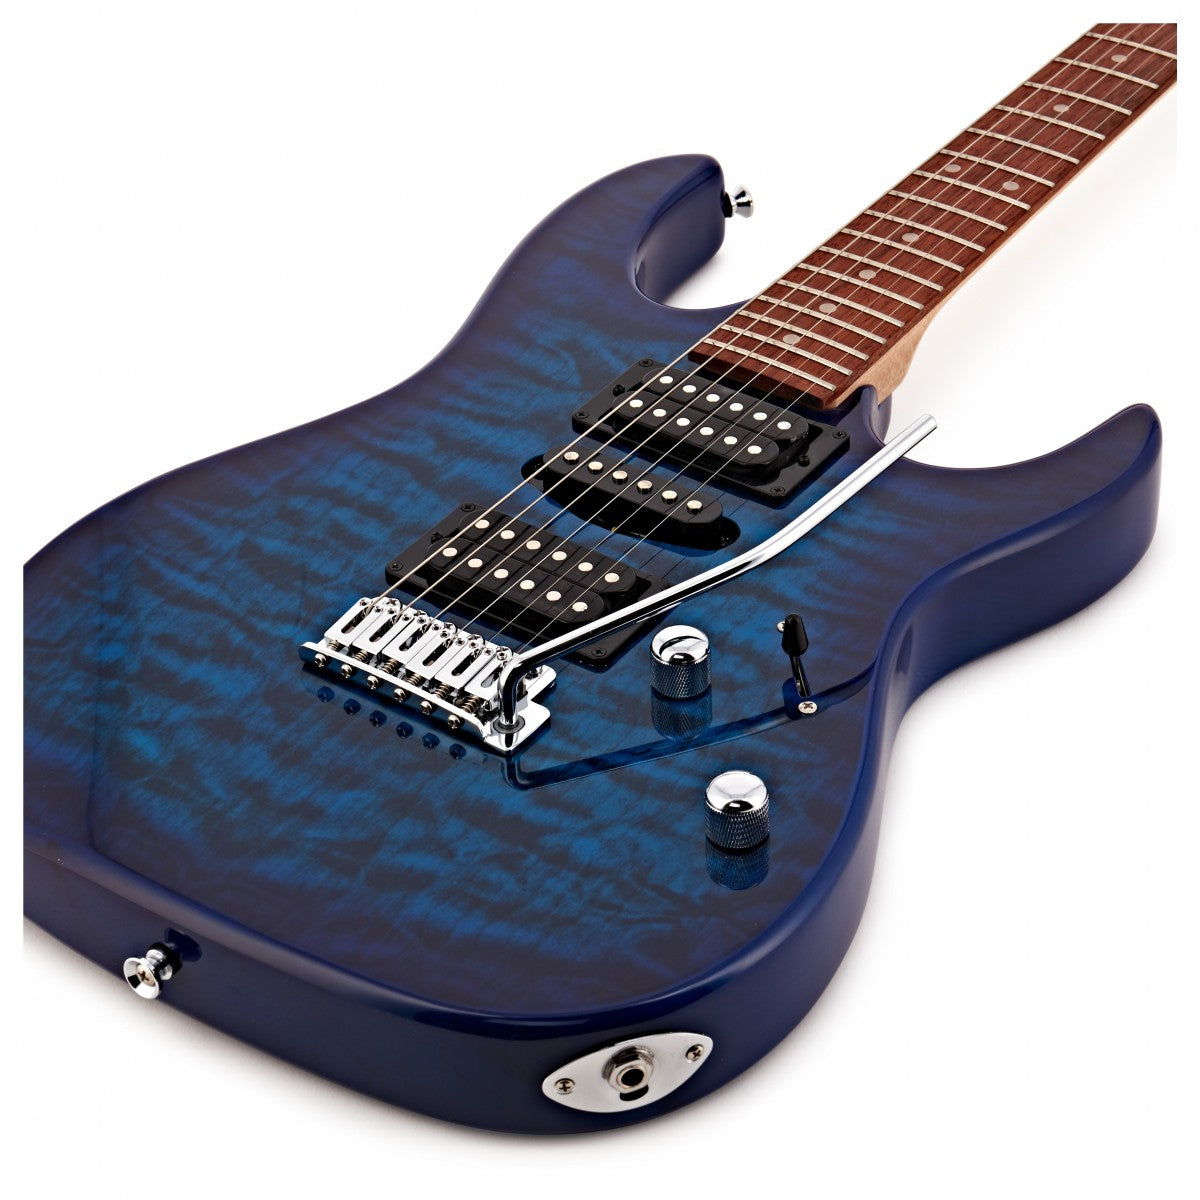 Đàn Guitar Điện Ibanez GIO GRX70QA, Transparent Blue Burst